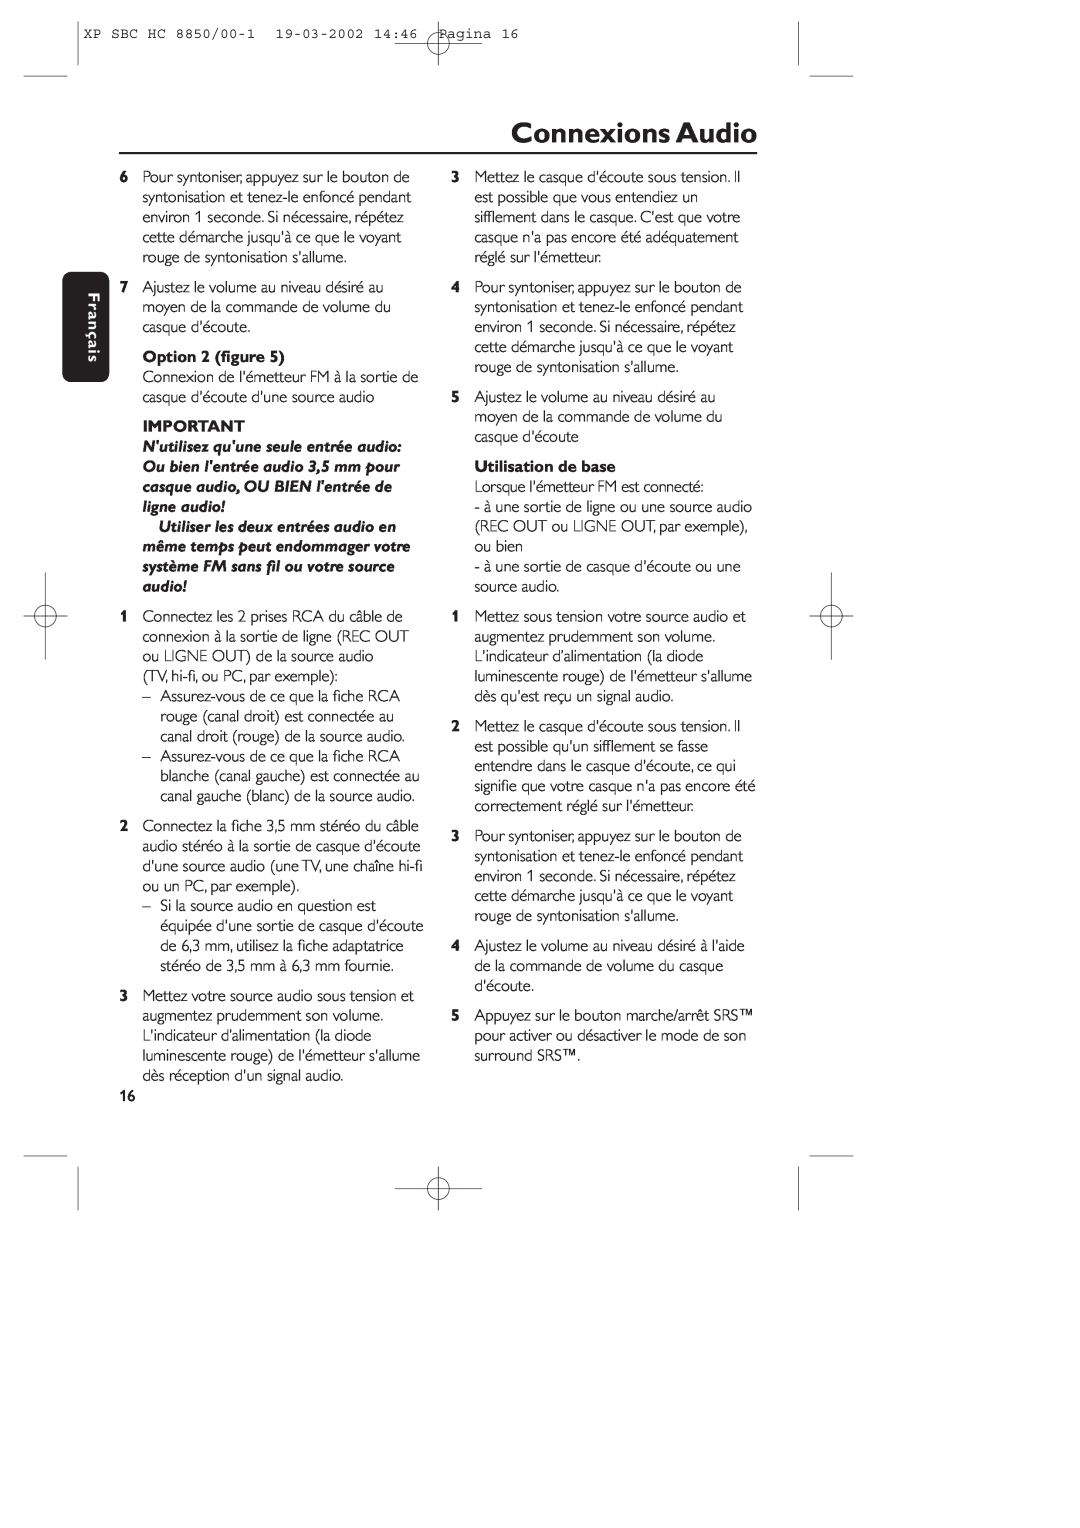 Philips HC8850 manual Connexions Audio, Français, Option 2 ﬁgure, Utilisation de base 